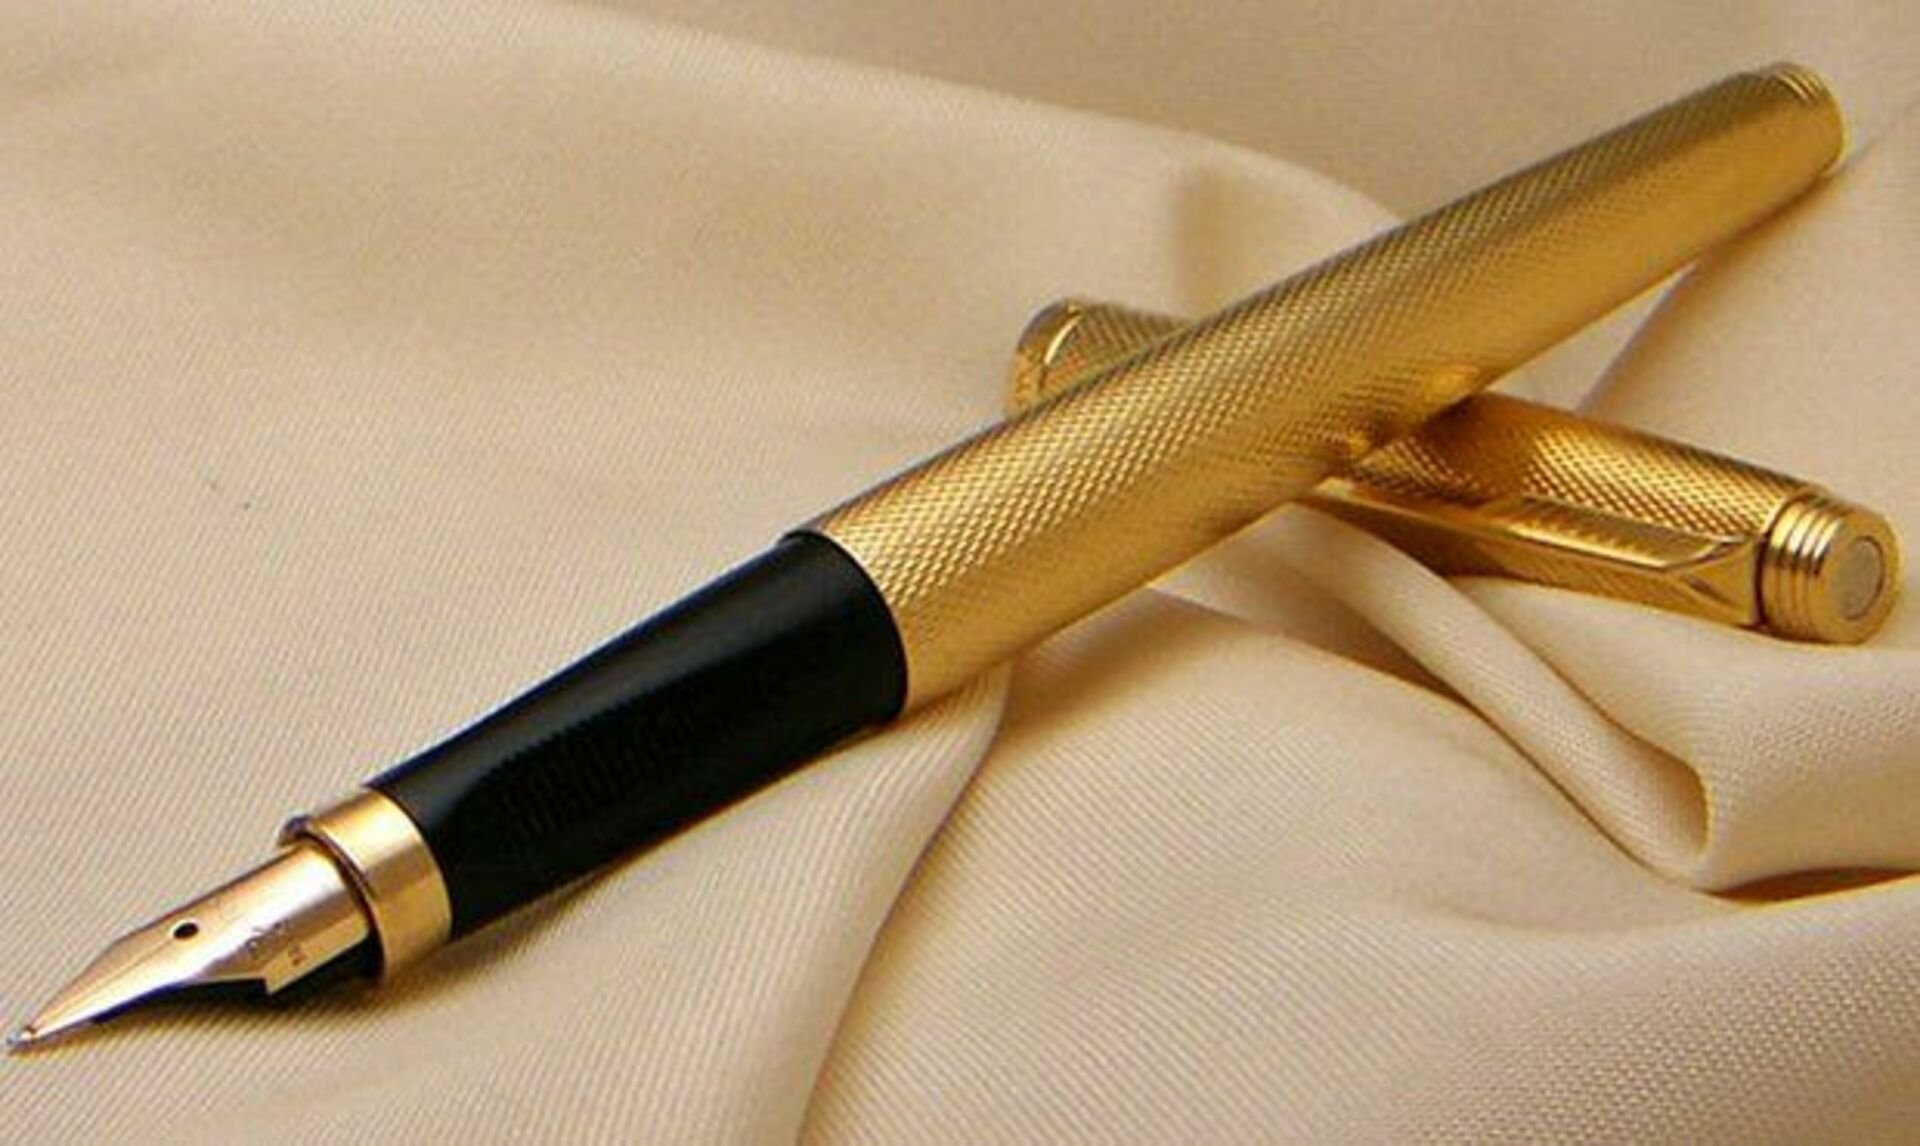 Вые ручки. Золотая перьевая ручка Паркер. 4260107479833 Gold ручка. Паркер чернильная ручка с золотым пером s0778310. Ручка Паркер перьевая малахит.